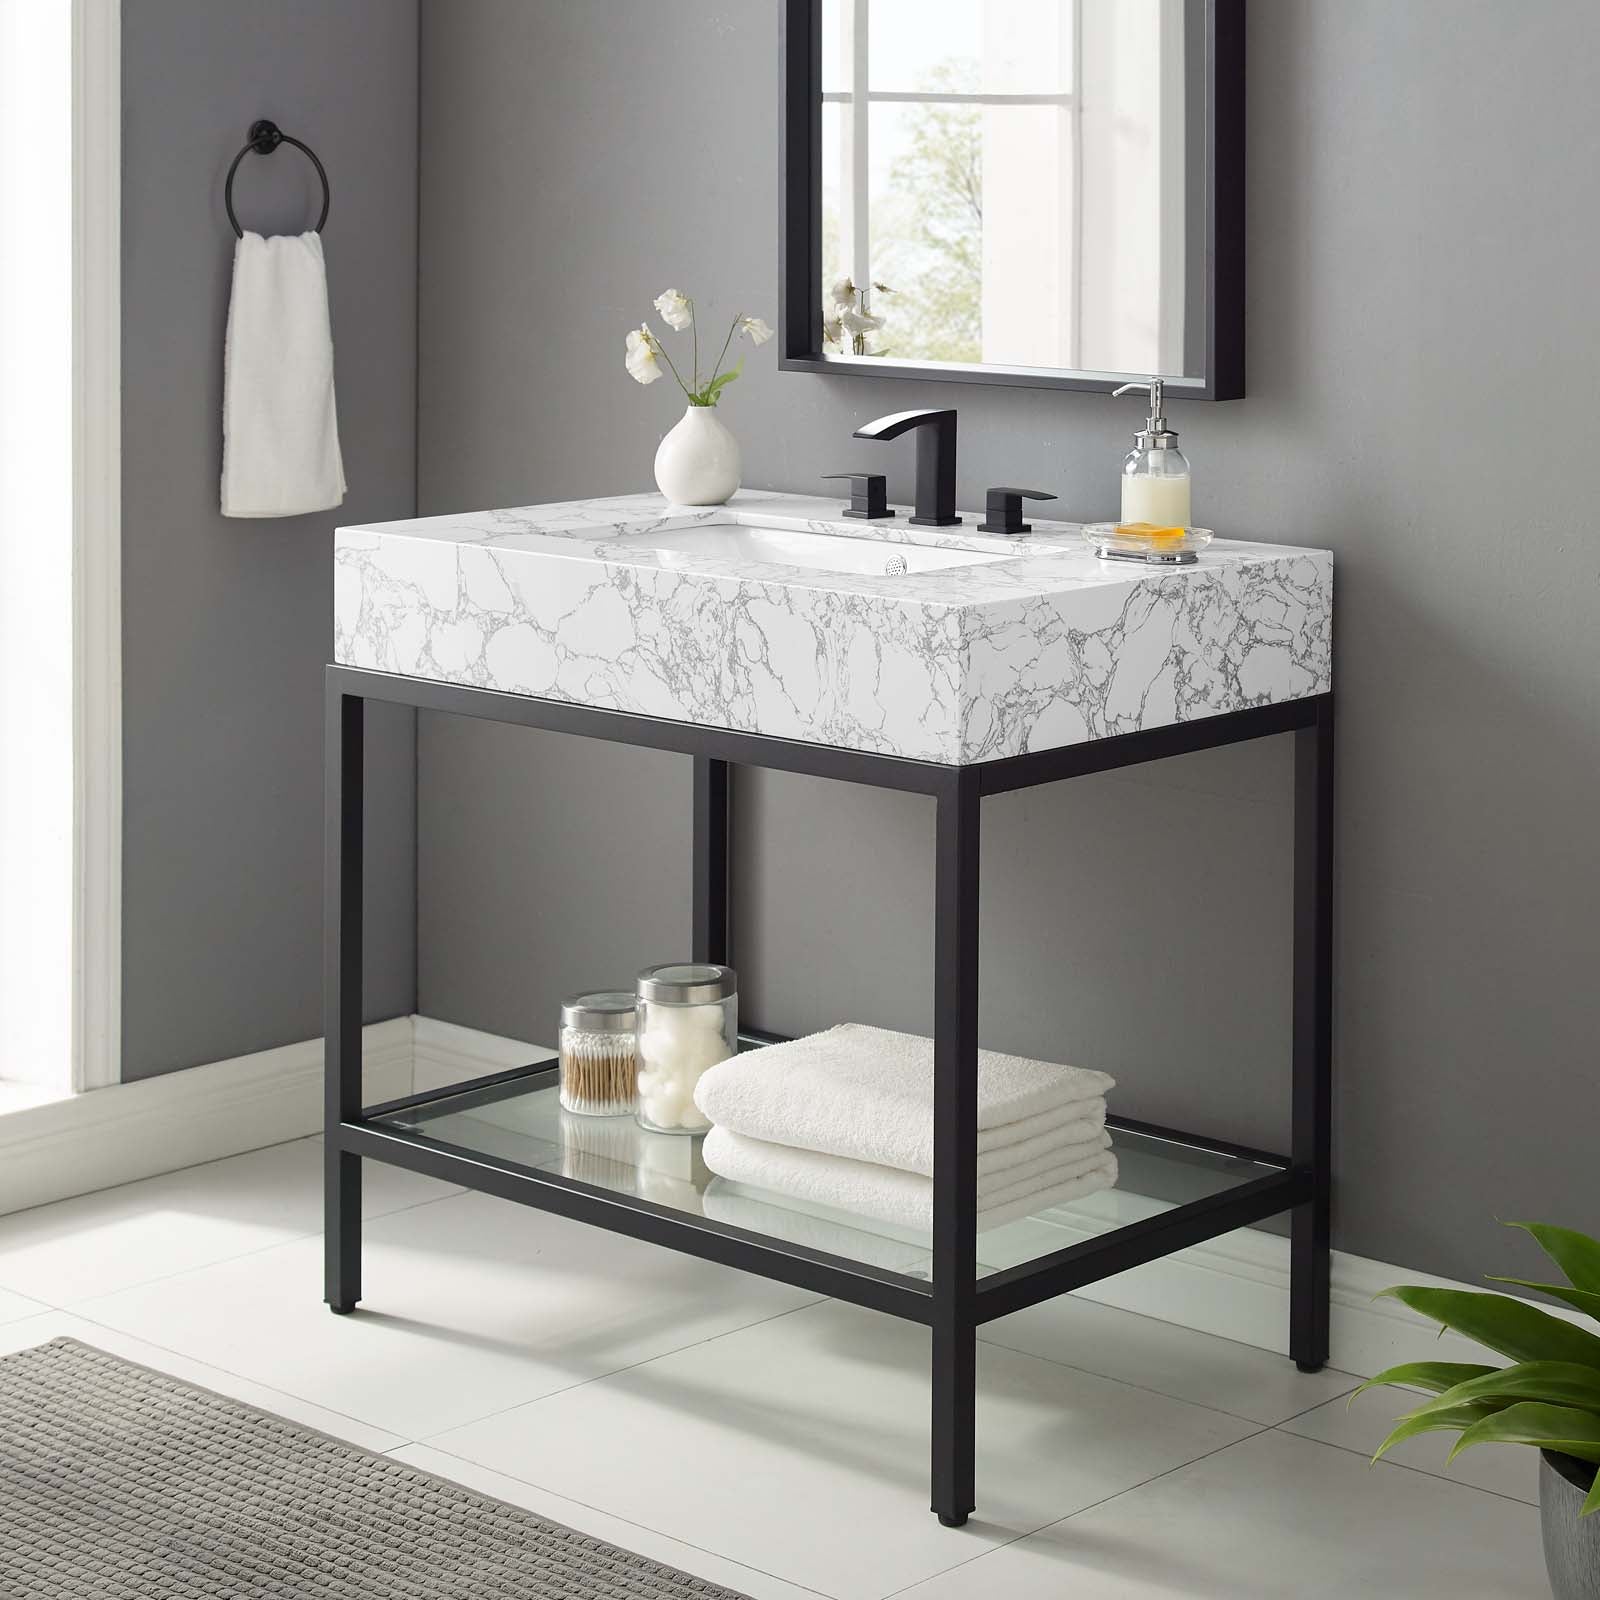 Kingsley 36" Black Stainless Steel Bathroom Vanity - East Shore Modern Home Furnishings